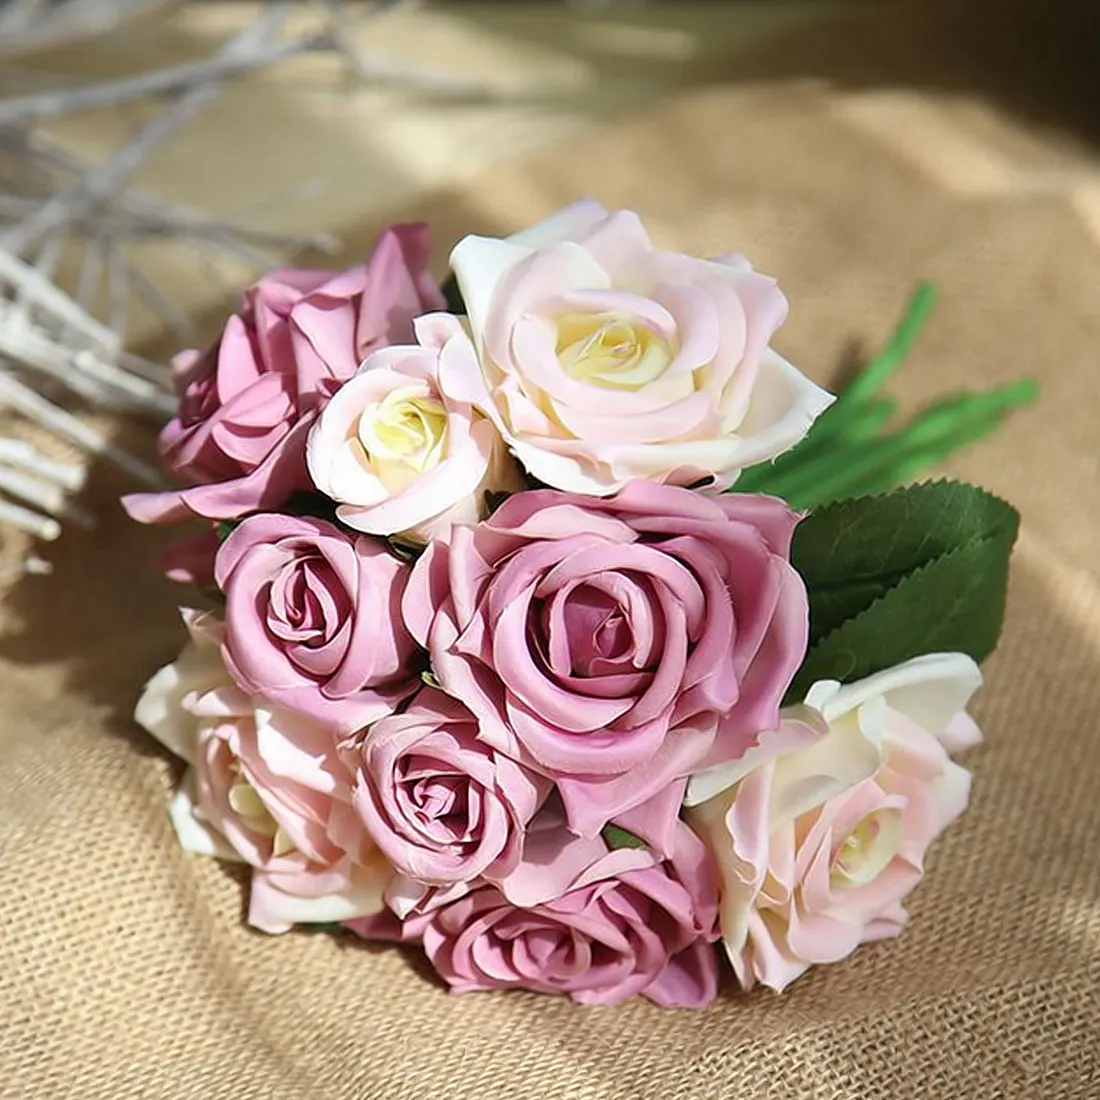 Высокое качество 9 шт. розы для банкета тайская Королевская роза Свадебные украшения Искусственные цветы Искусственный шелк цветок розы домашний декор - Цвет: White purple